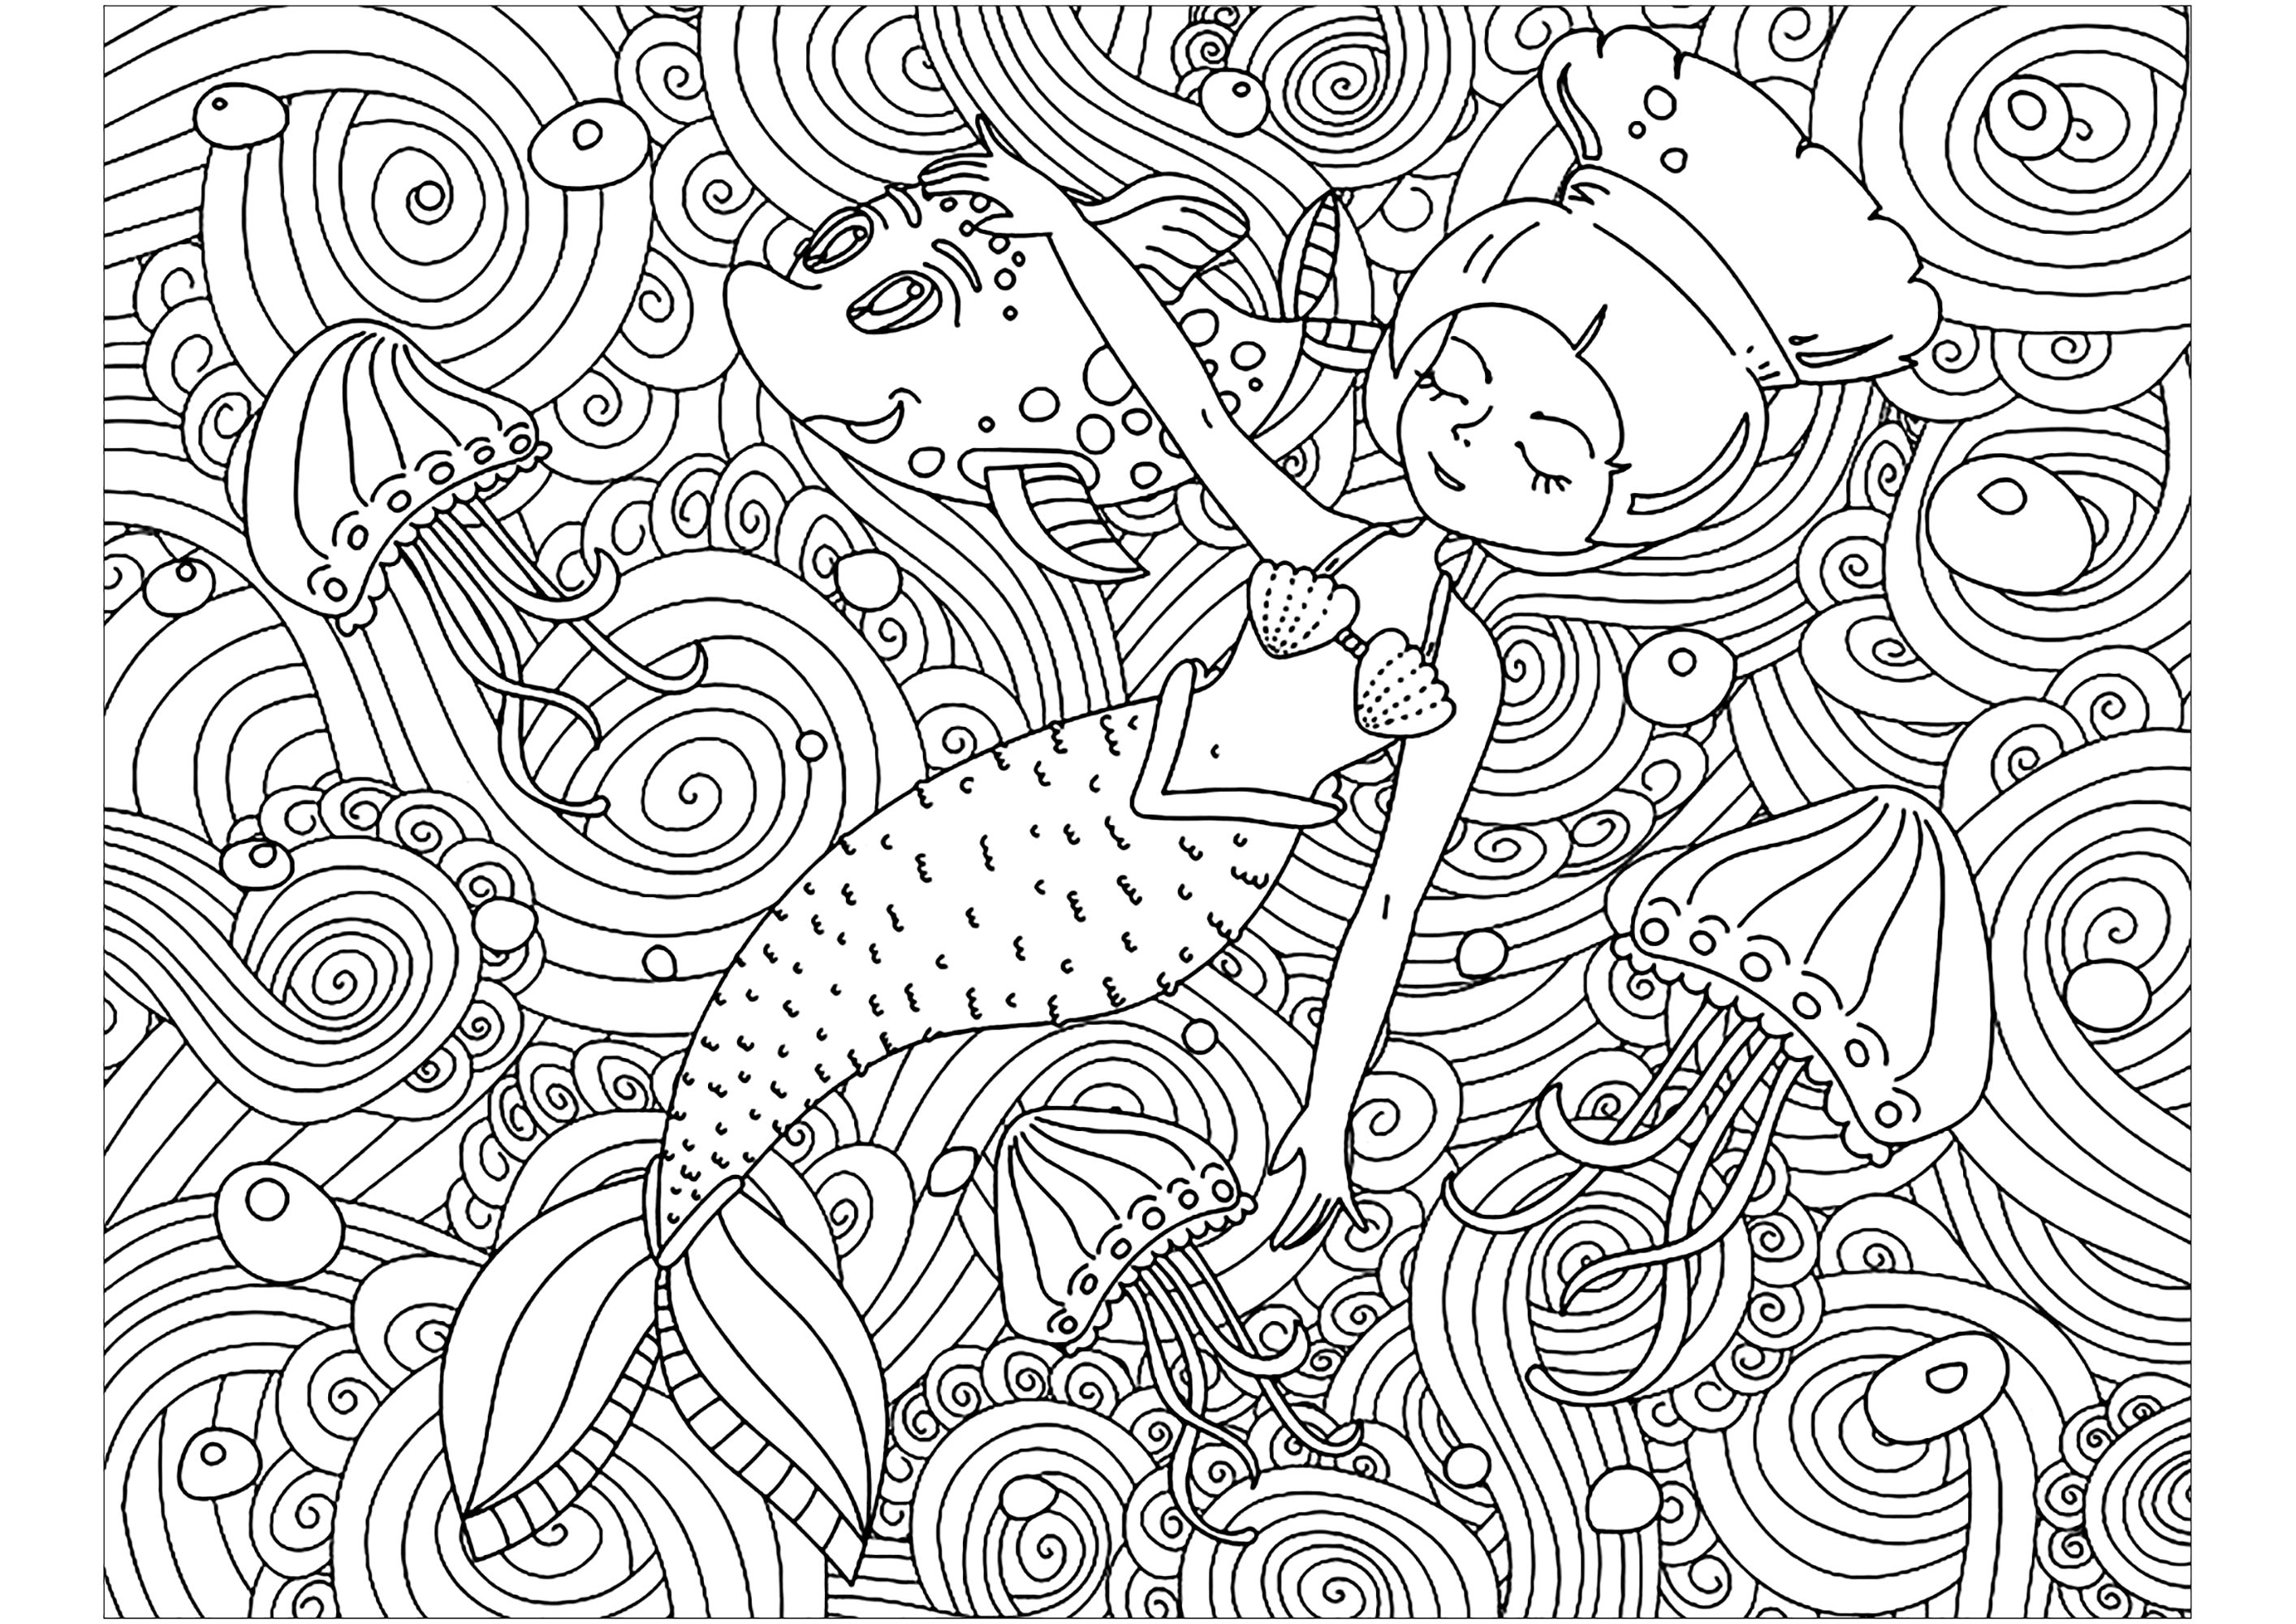 Sirena e motivi graziosi. Colorate questa sirenetta che dorme tranquillamente in un mare pieno di bellissimi disegni intricati, Fonte : 123rf   Artista : Lexver